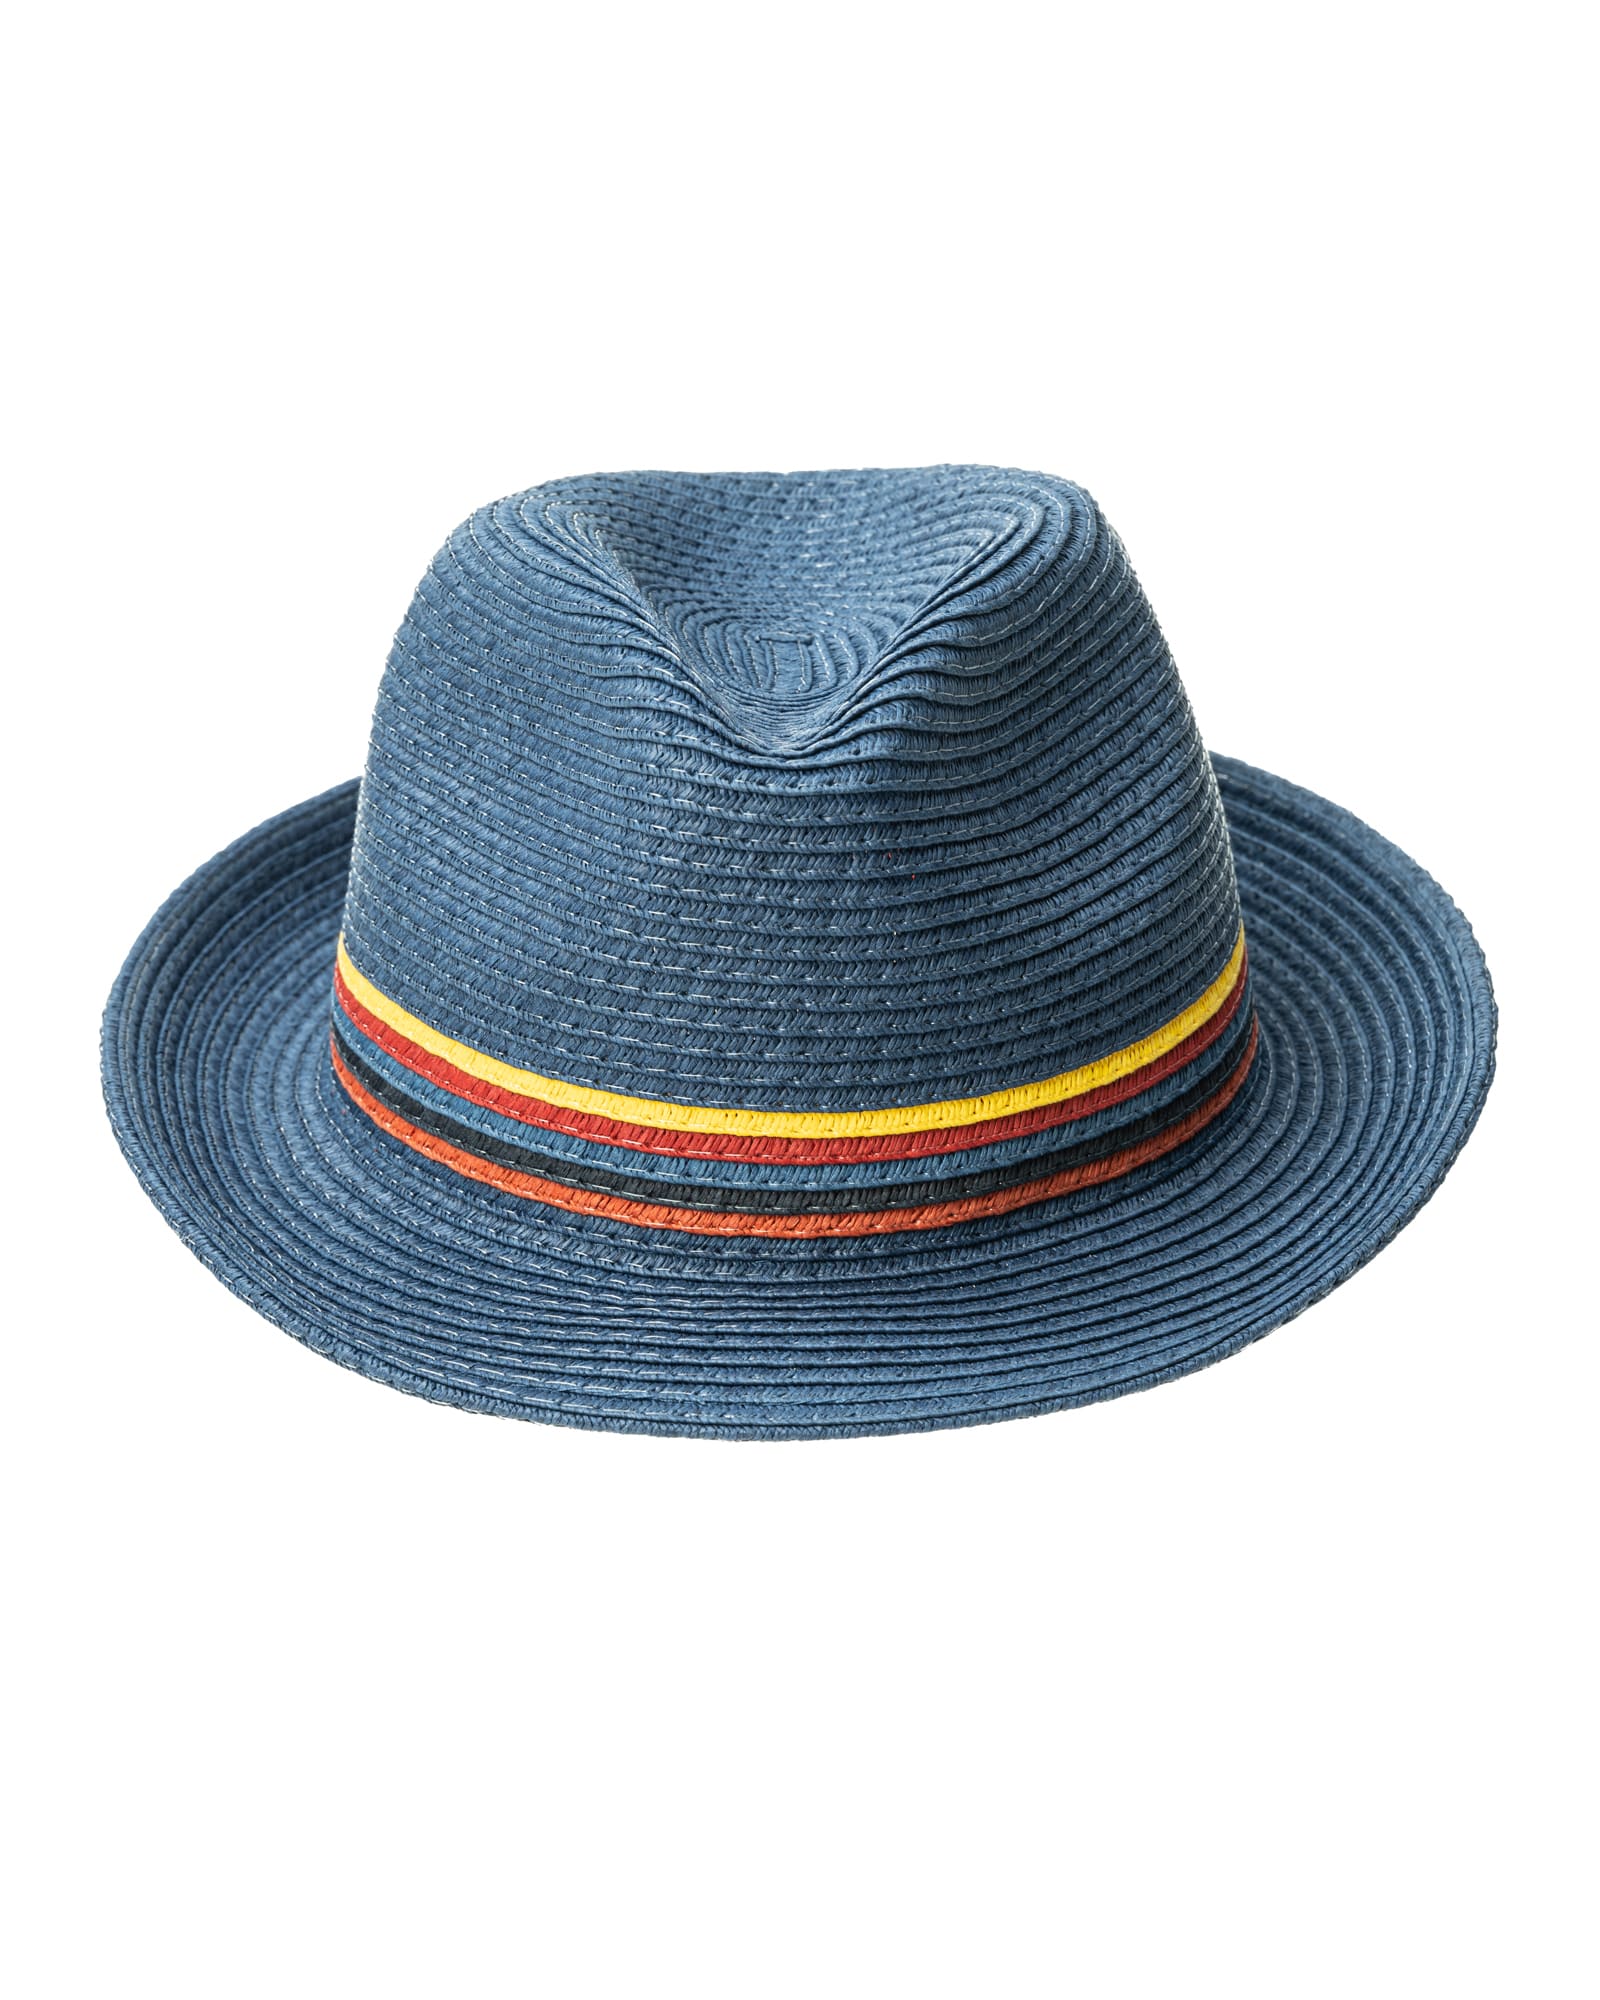 Paul Smith Trilby hat